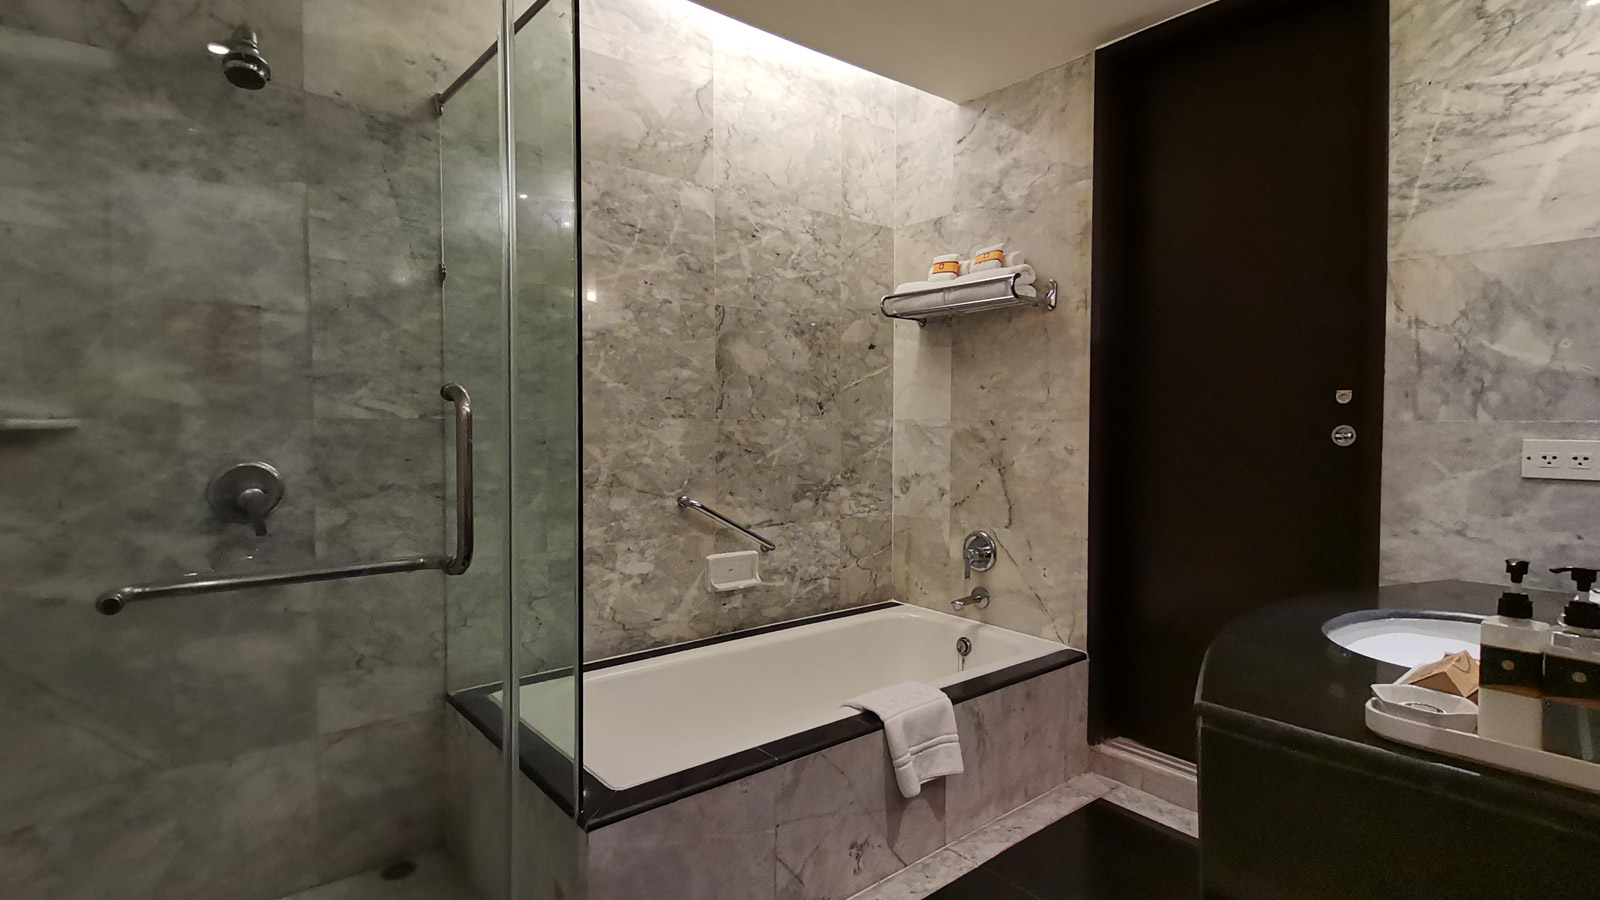 Premier Suite Bathroom - The Tide Resort - 观潮度家村